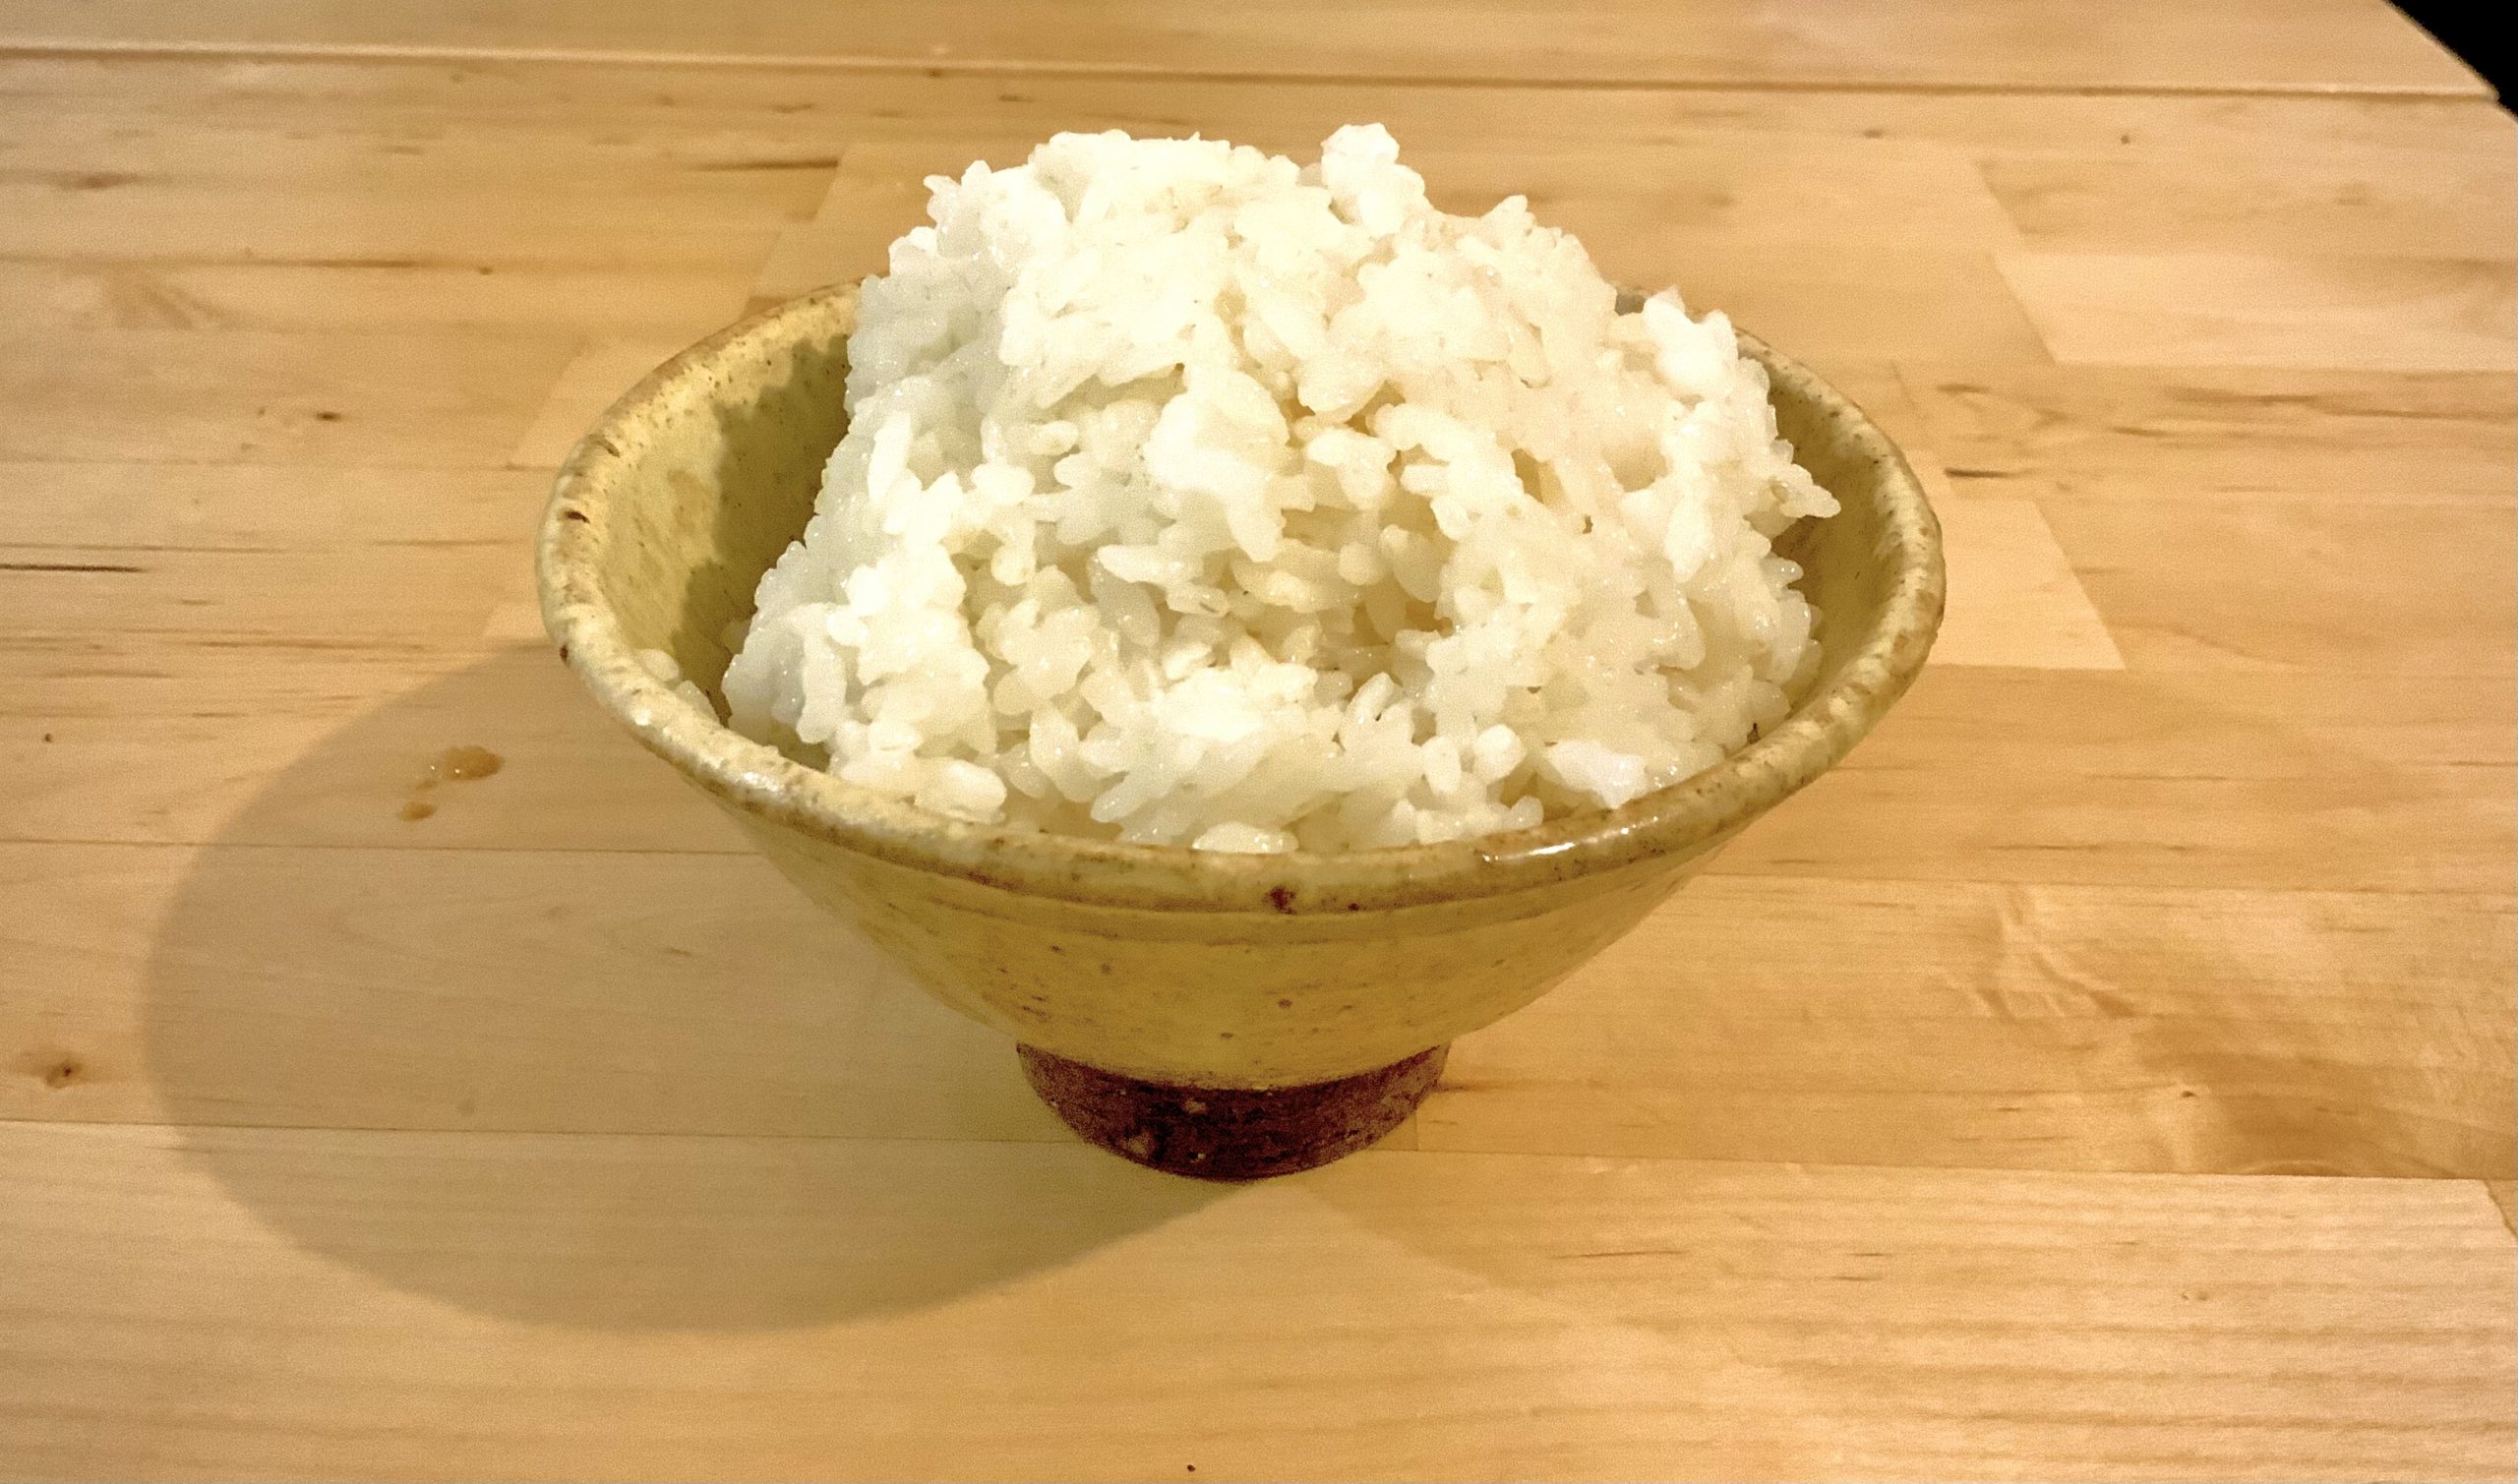 玄米を家庭で精米する方法